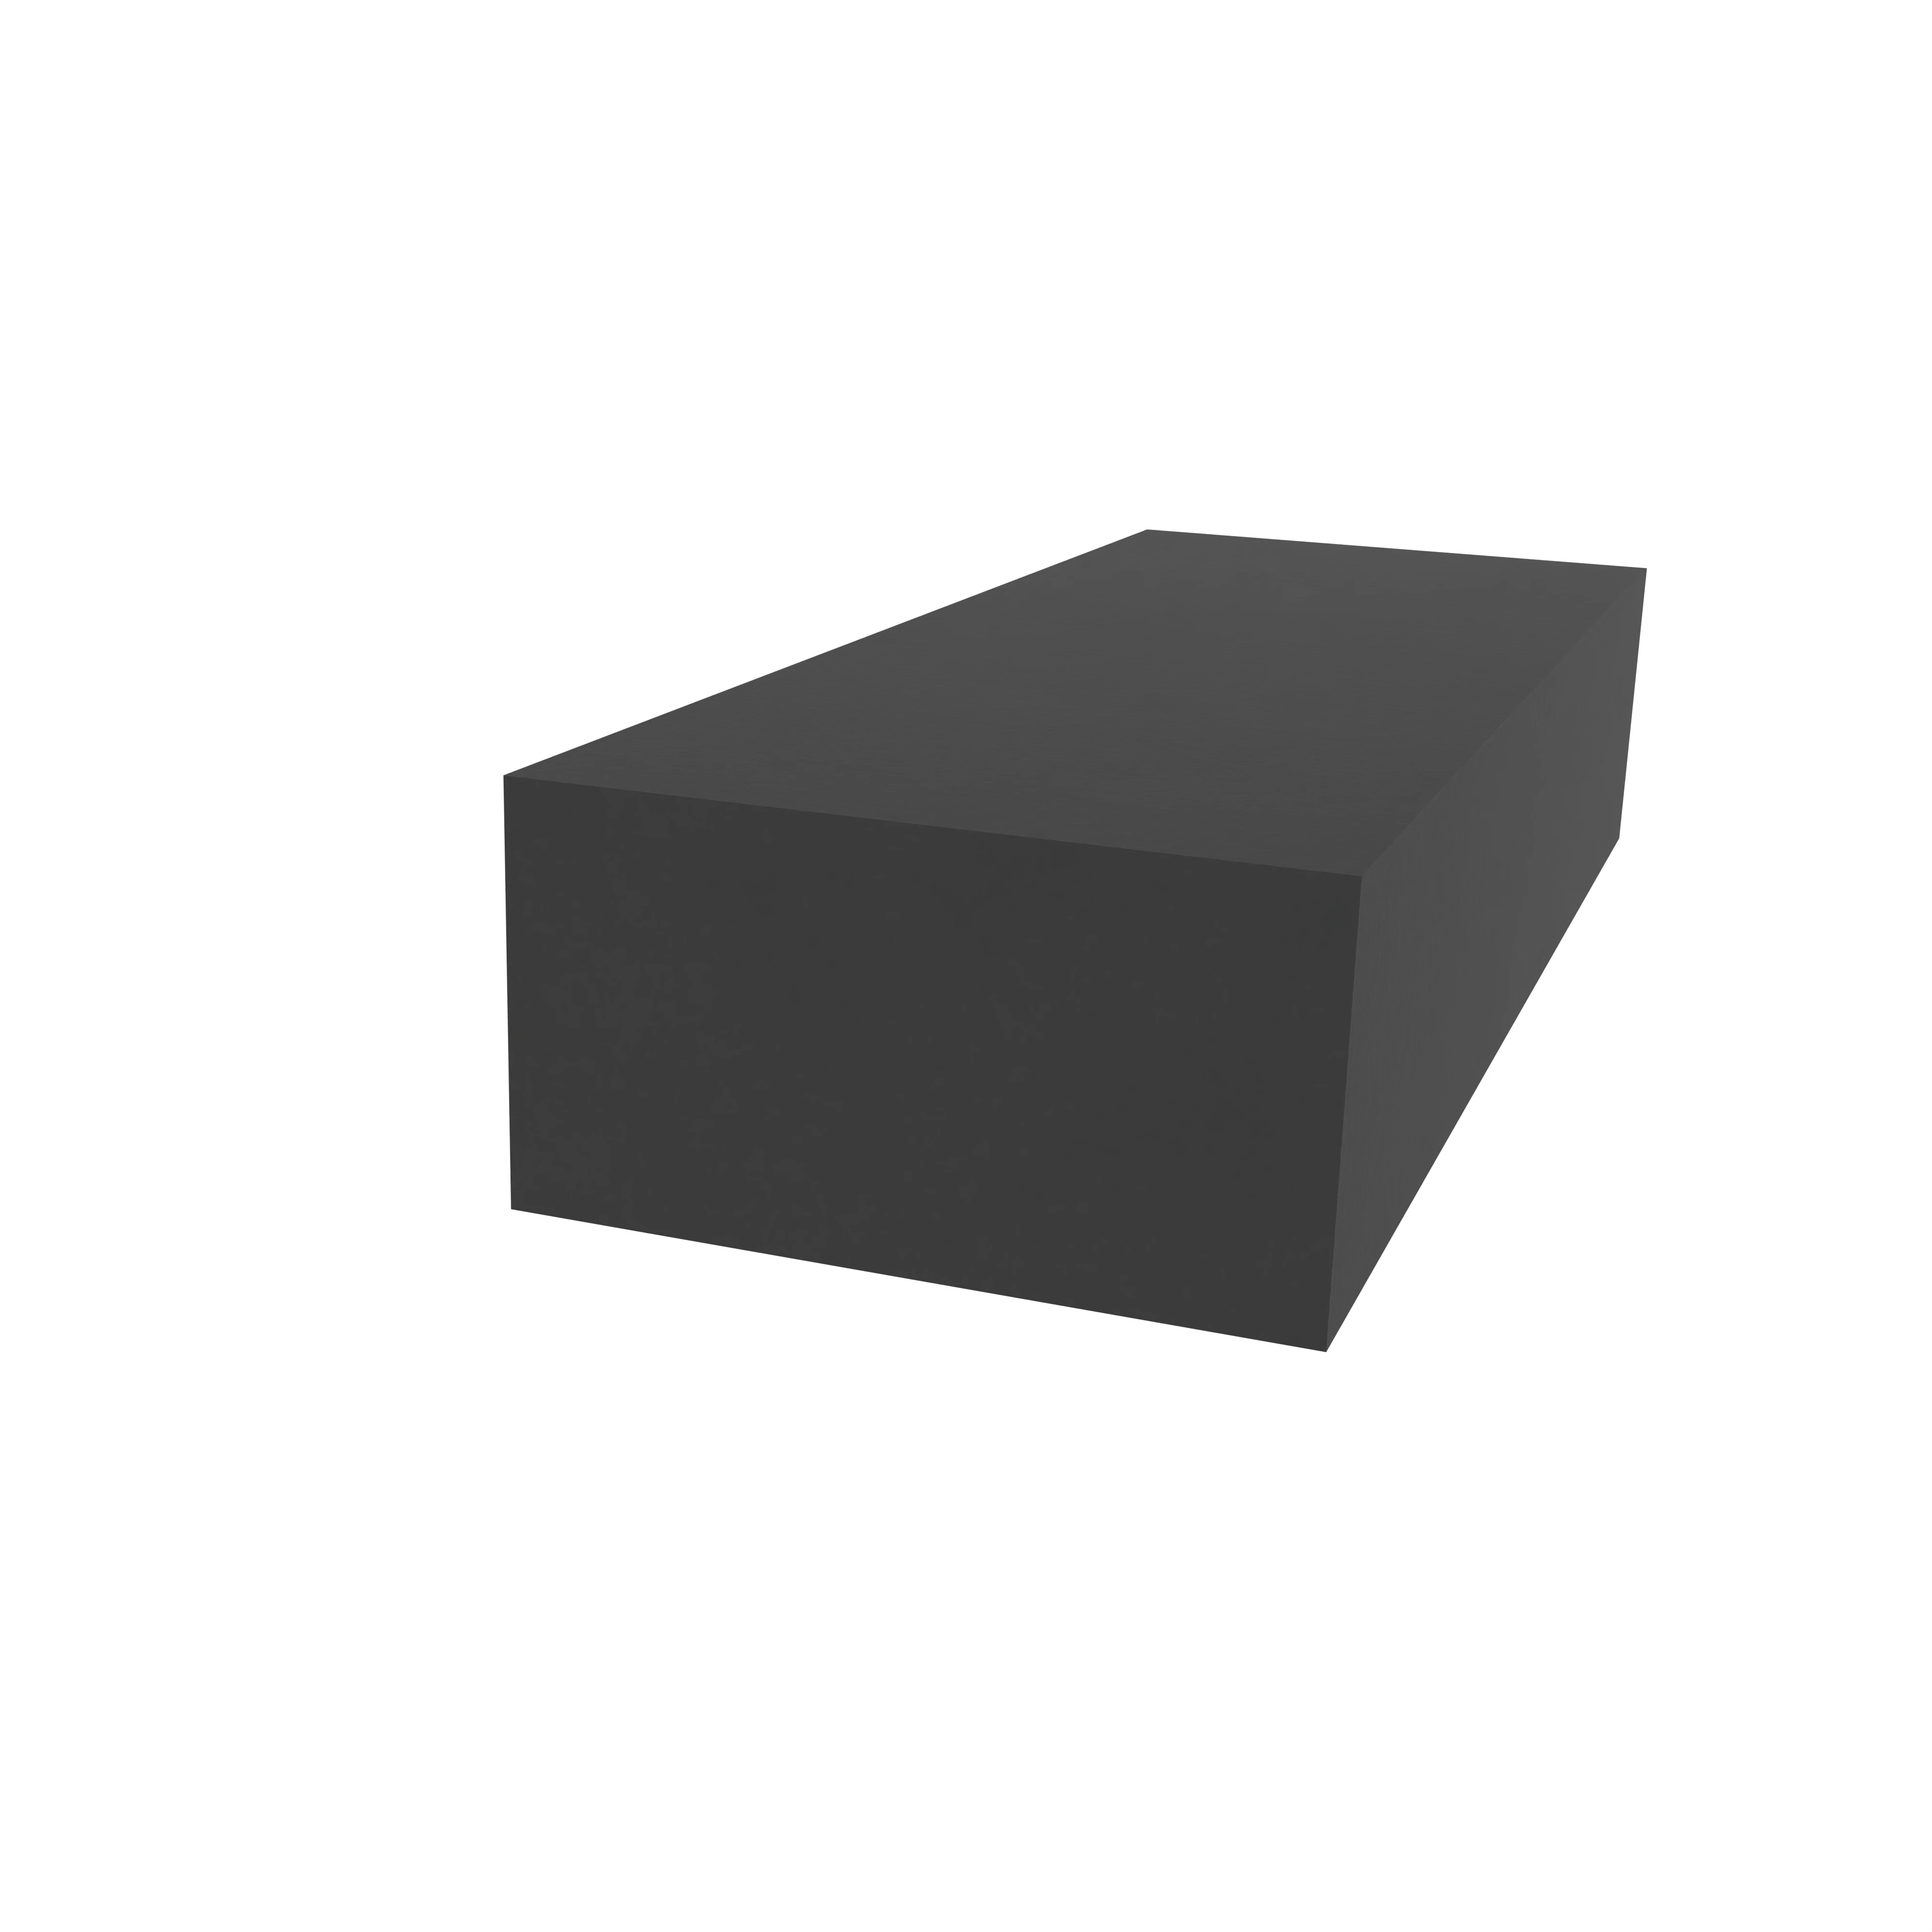 Moosgummidichtung vierkant | 15 mm Breite | Farbe: schwarz